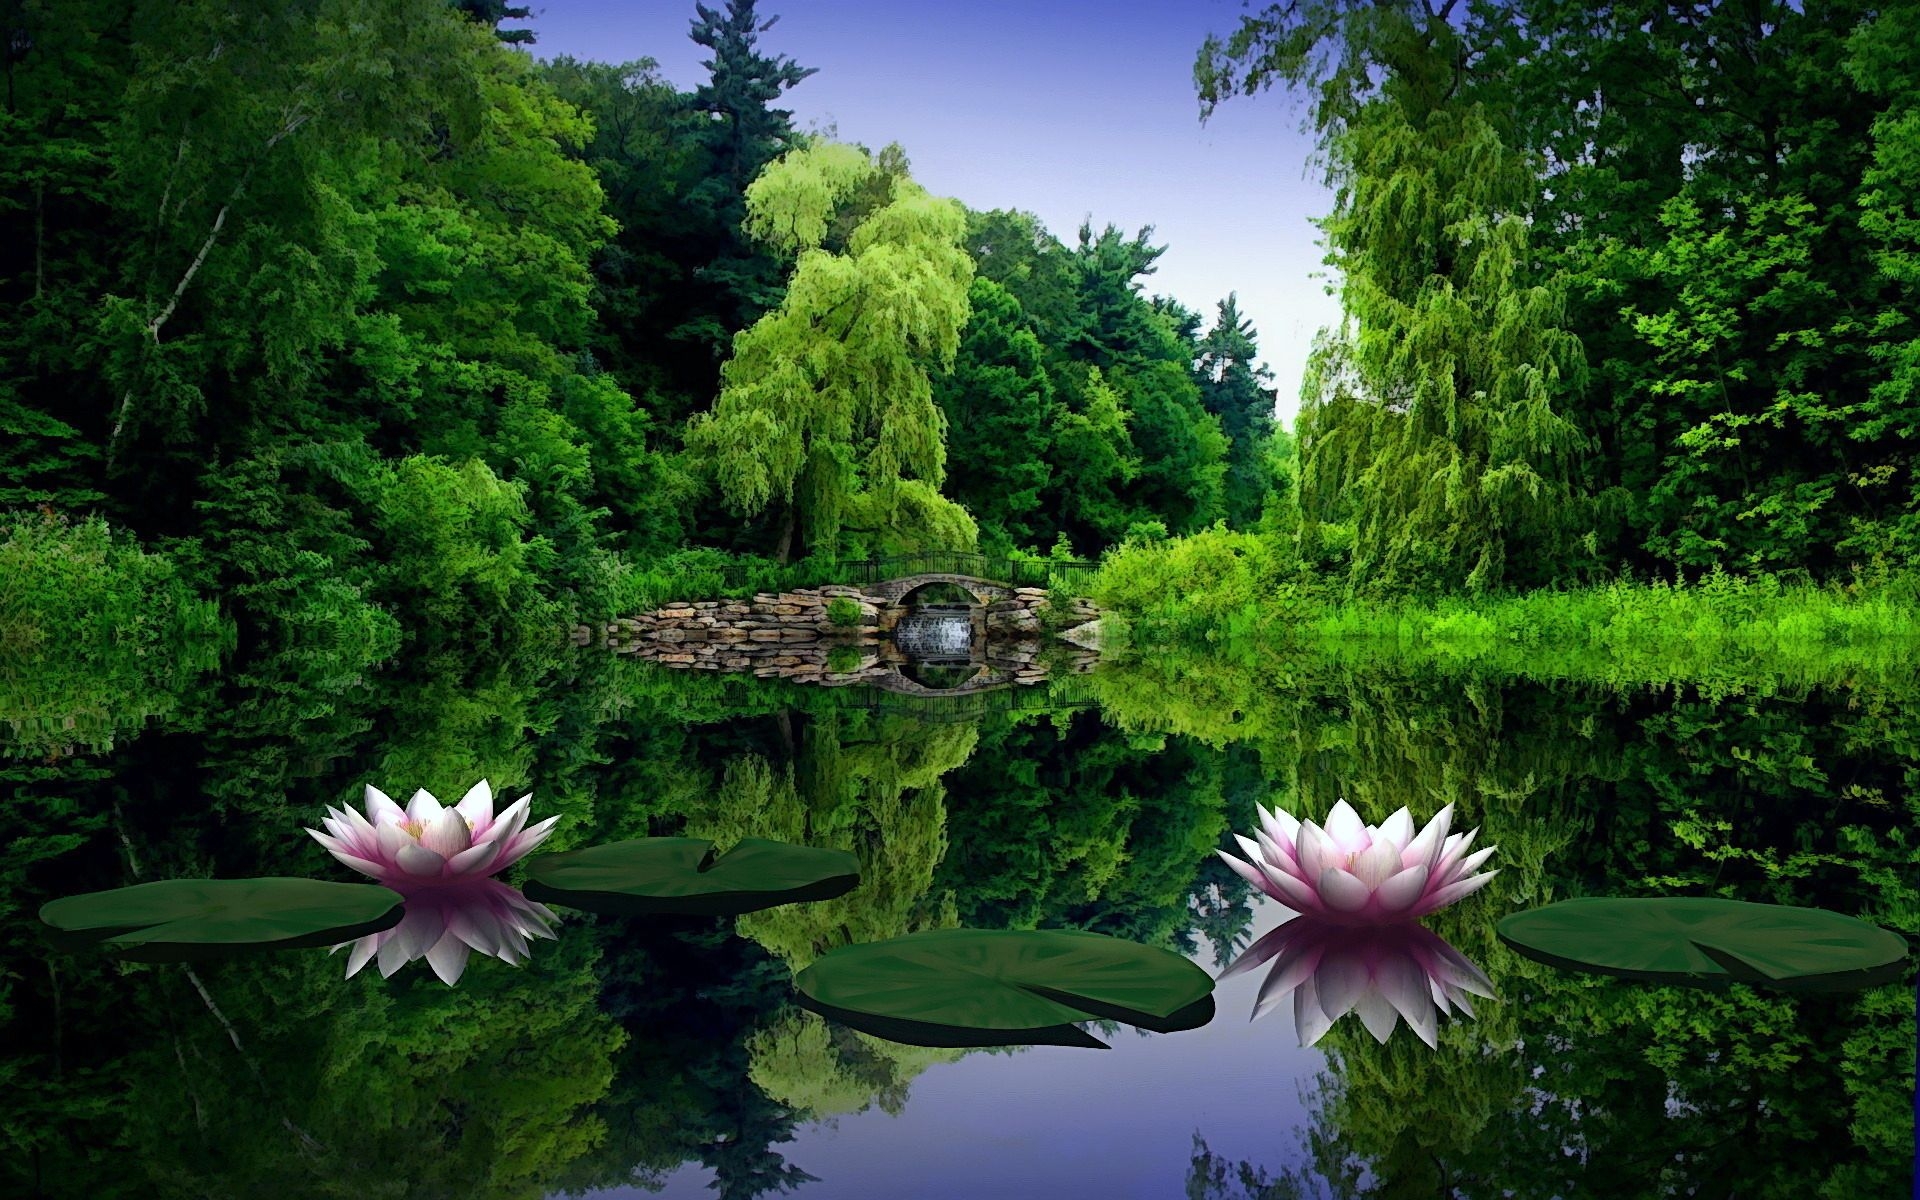 Картинки Водяные лилии, вода, листья, пруд, мост, деревья, красота, зеленый, природа фото и обои на рабочий стол